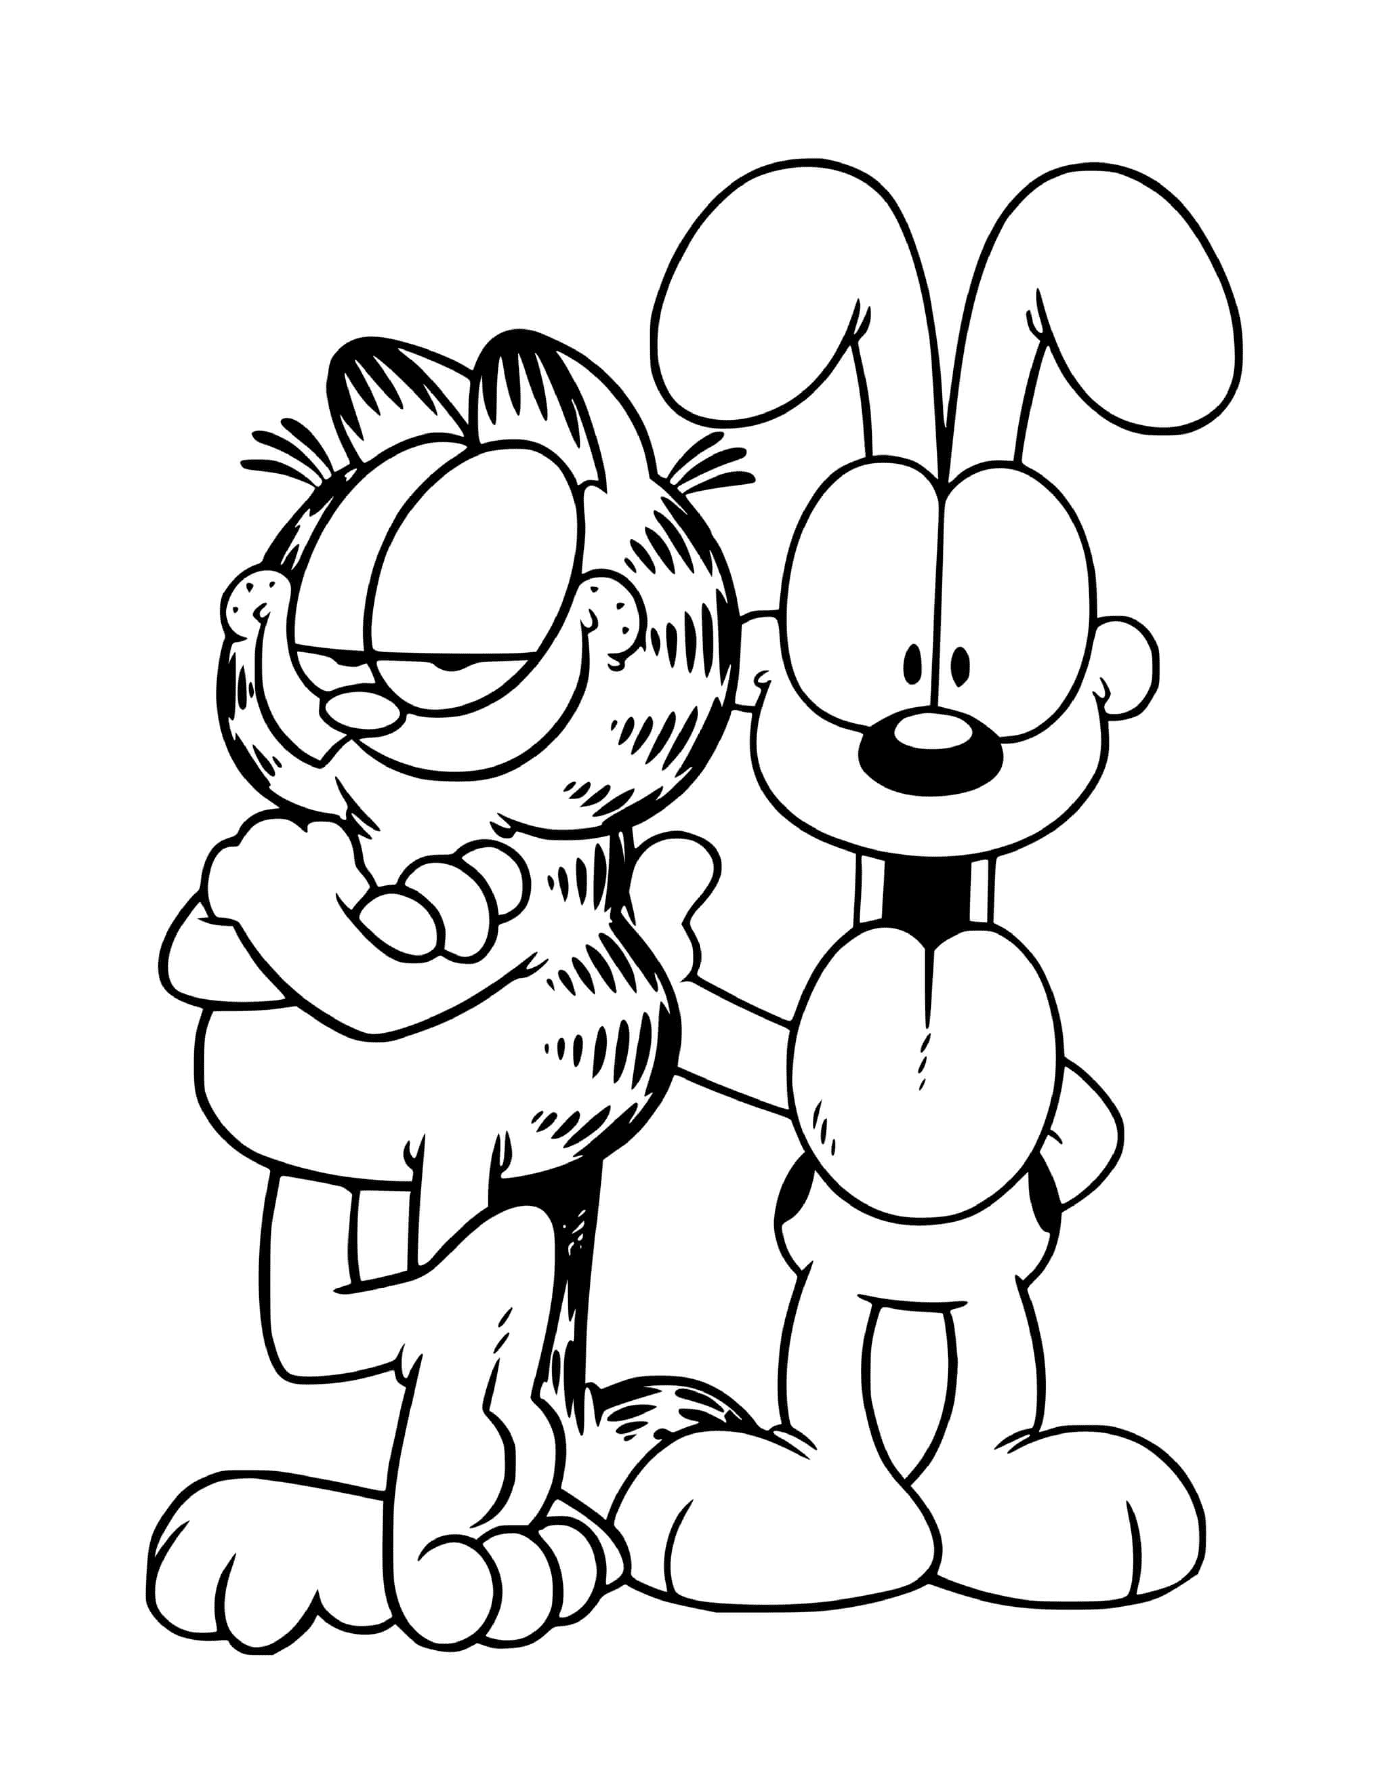 Garfield et Odie le chien